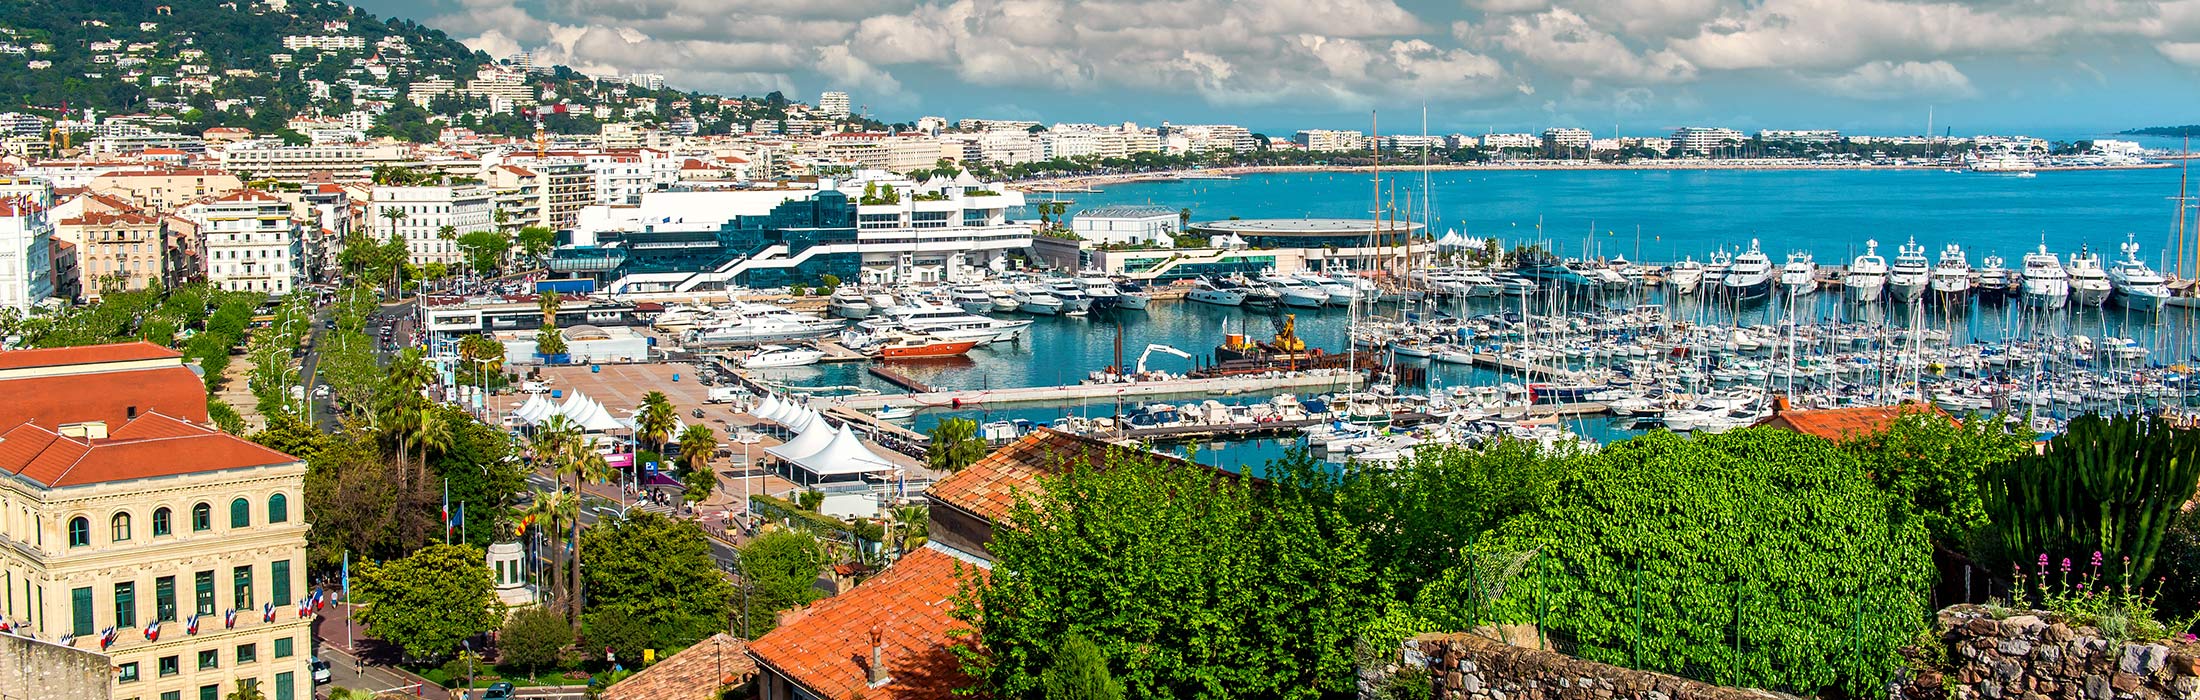 top yacht charter destinations mediterranean french riviera cannes main slider 2